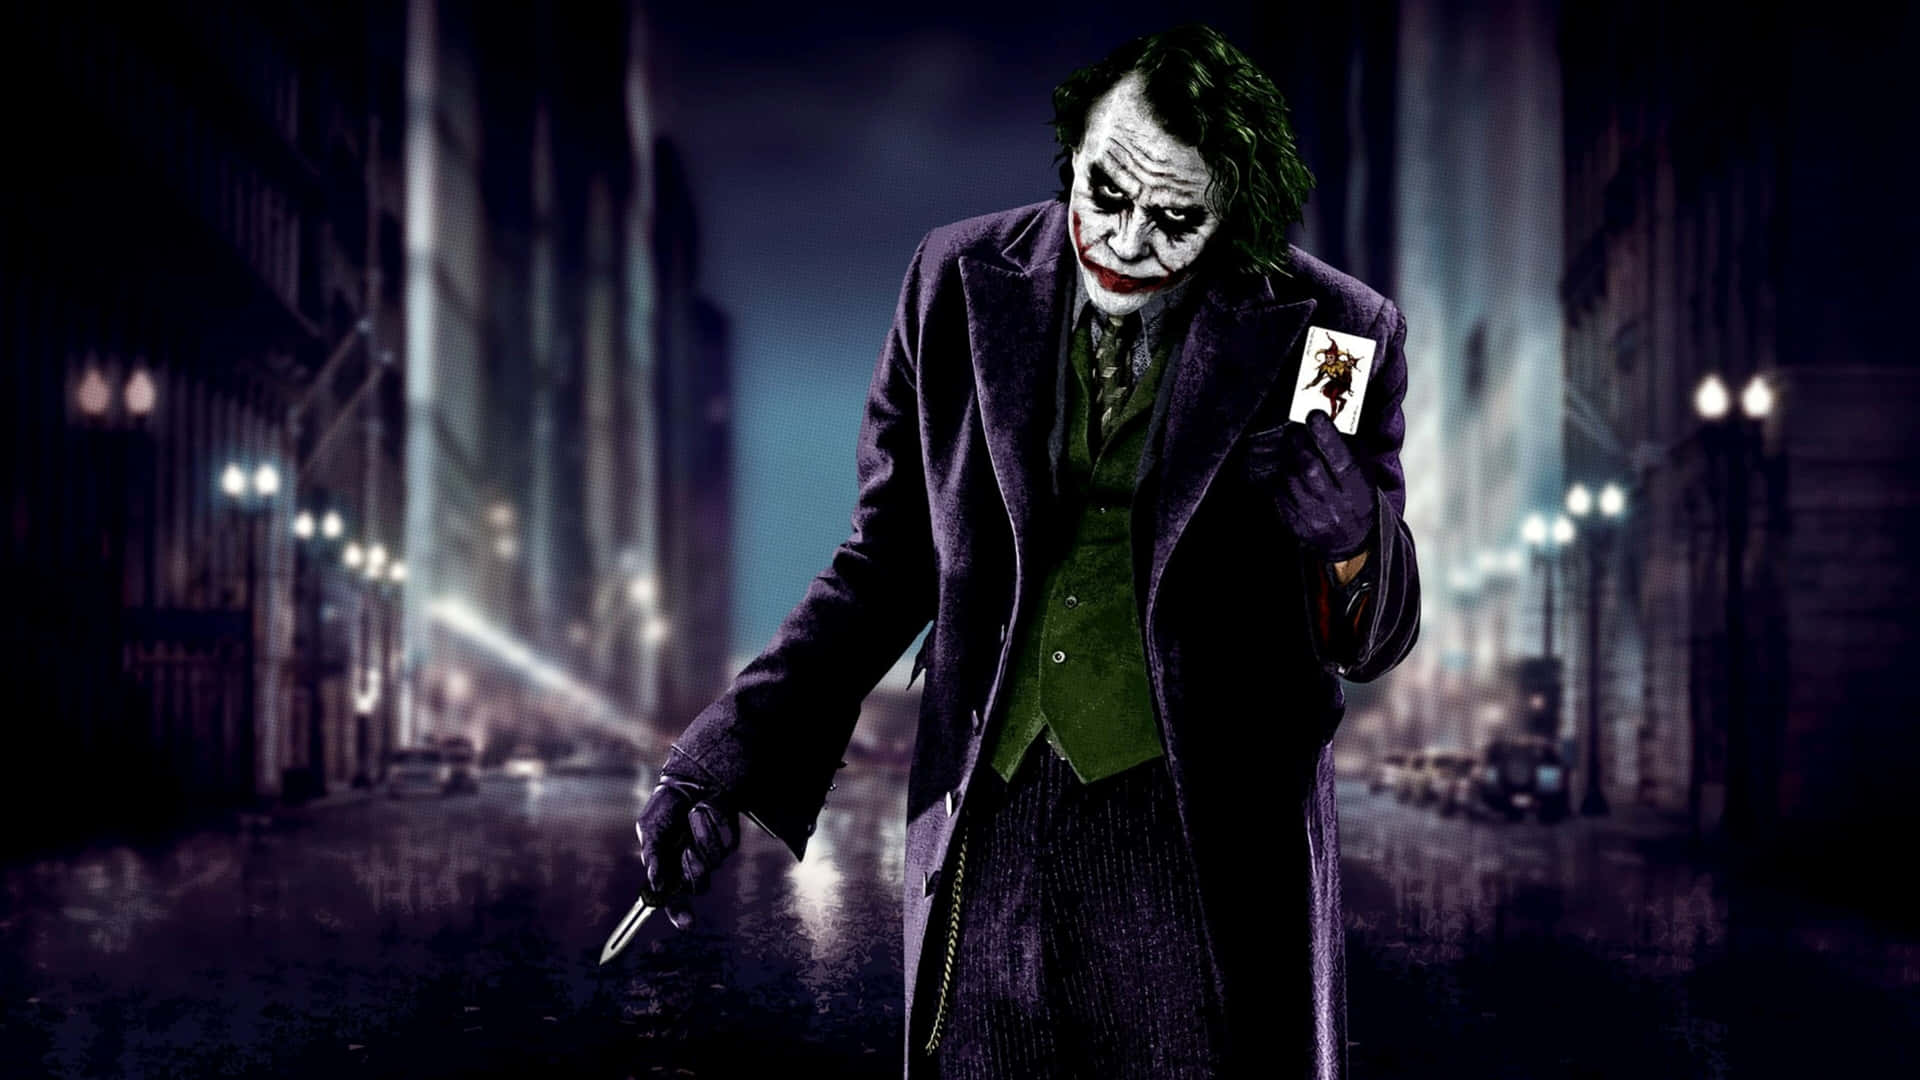 Dark Knight Joker In 4k Ultra Hd Walking At The City Wallpaper